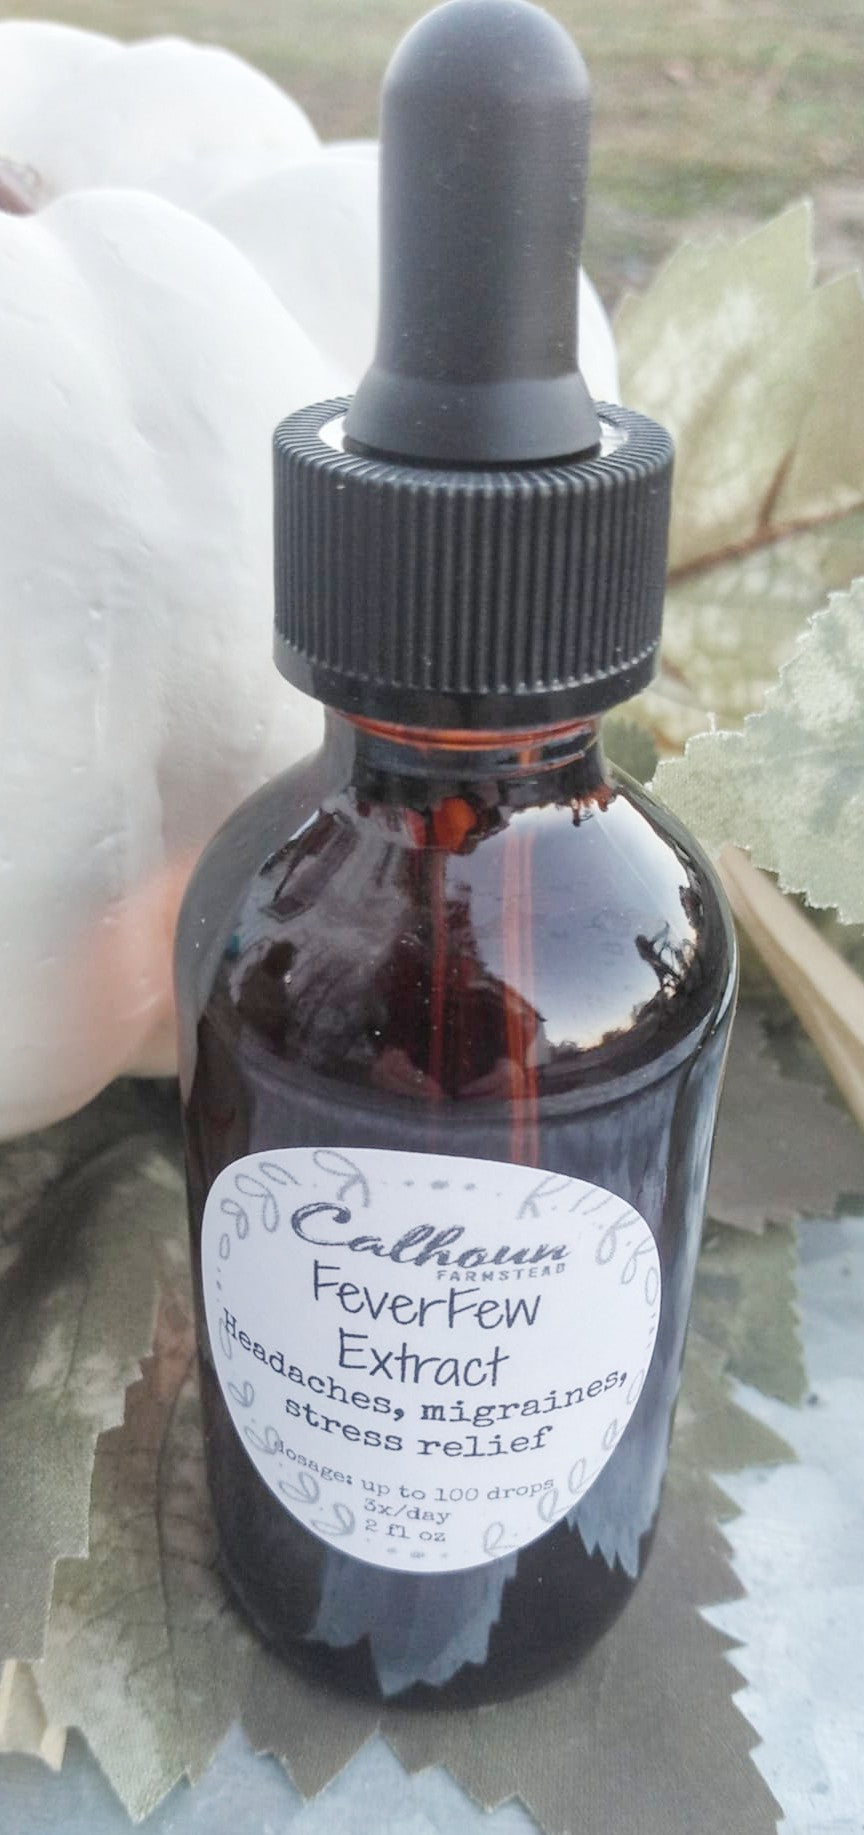 FeverFew Extract - Tincture